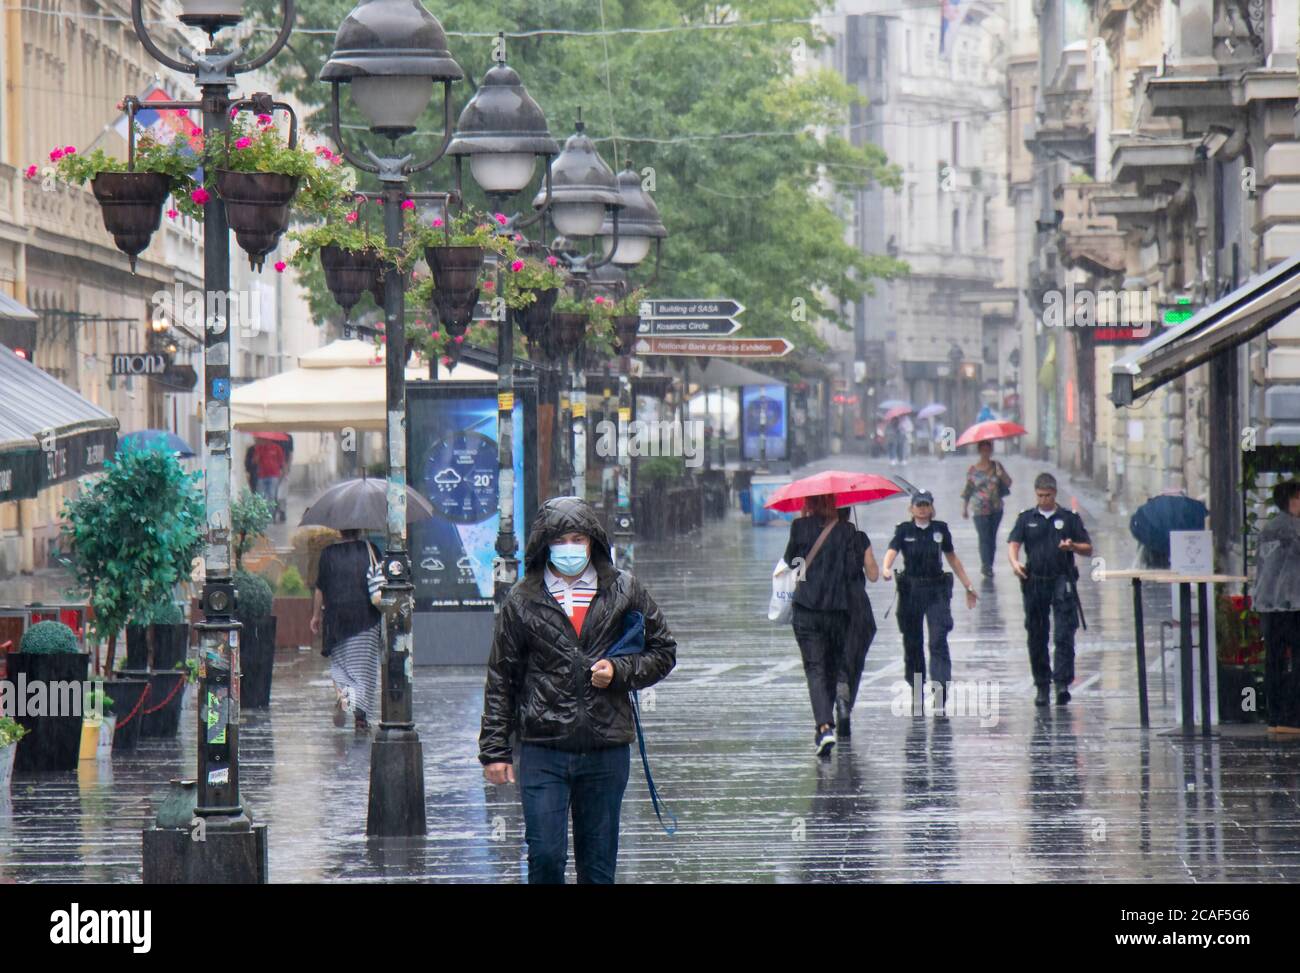 Belgrado, Serbia - 5 agosto 2020: Persone che camminano sulla strada pedonale Knez Mihailova in una giornata estiva piovosa in città Foto Stock